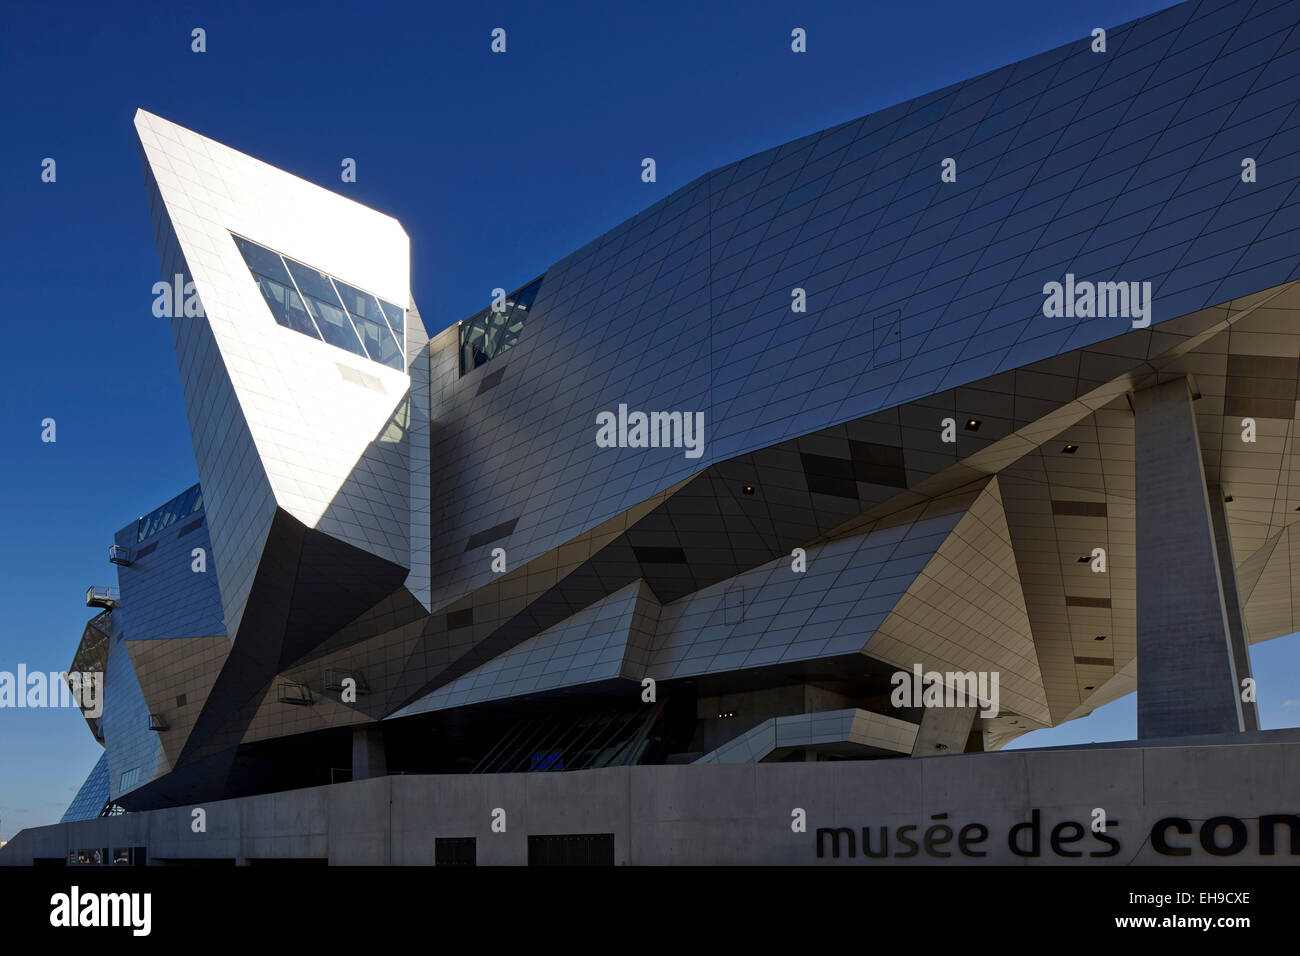 Detailansicht von Seite. Musée des Confluences, Lyon, Frankreich. Architekt: COOP HIMMELB (L) AU, 2015. Stockfoto